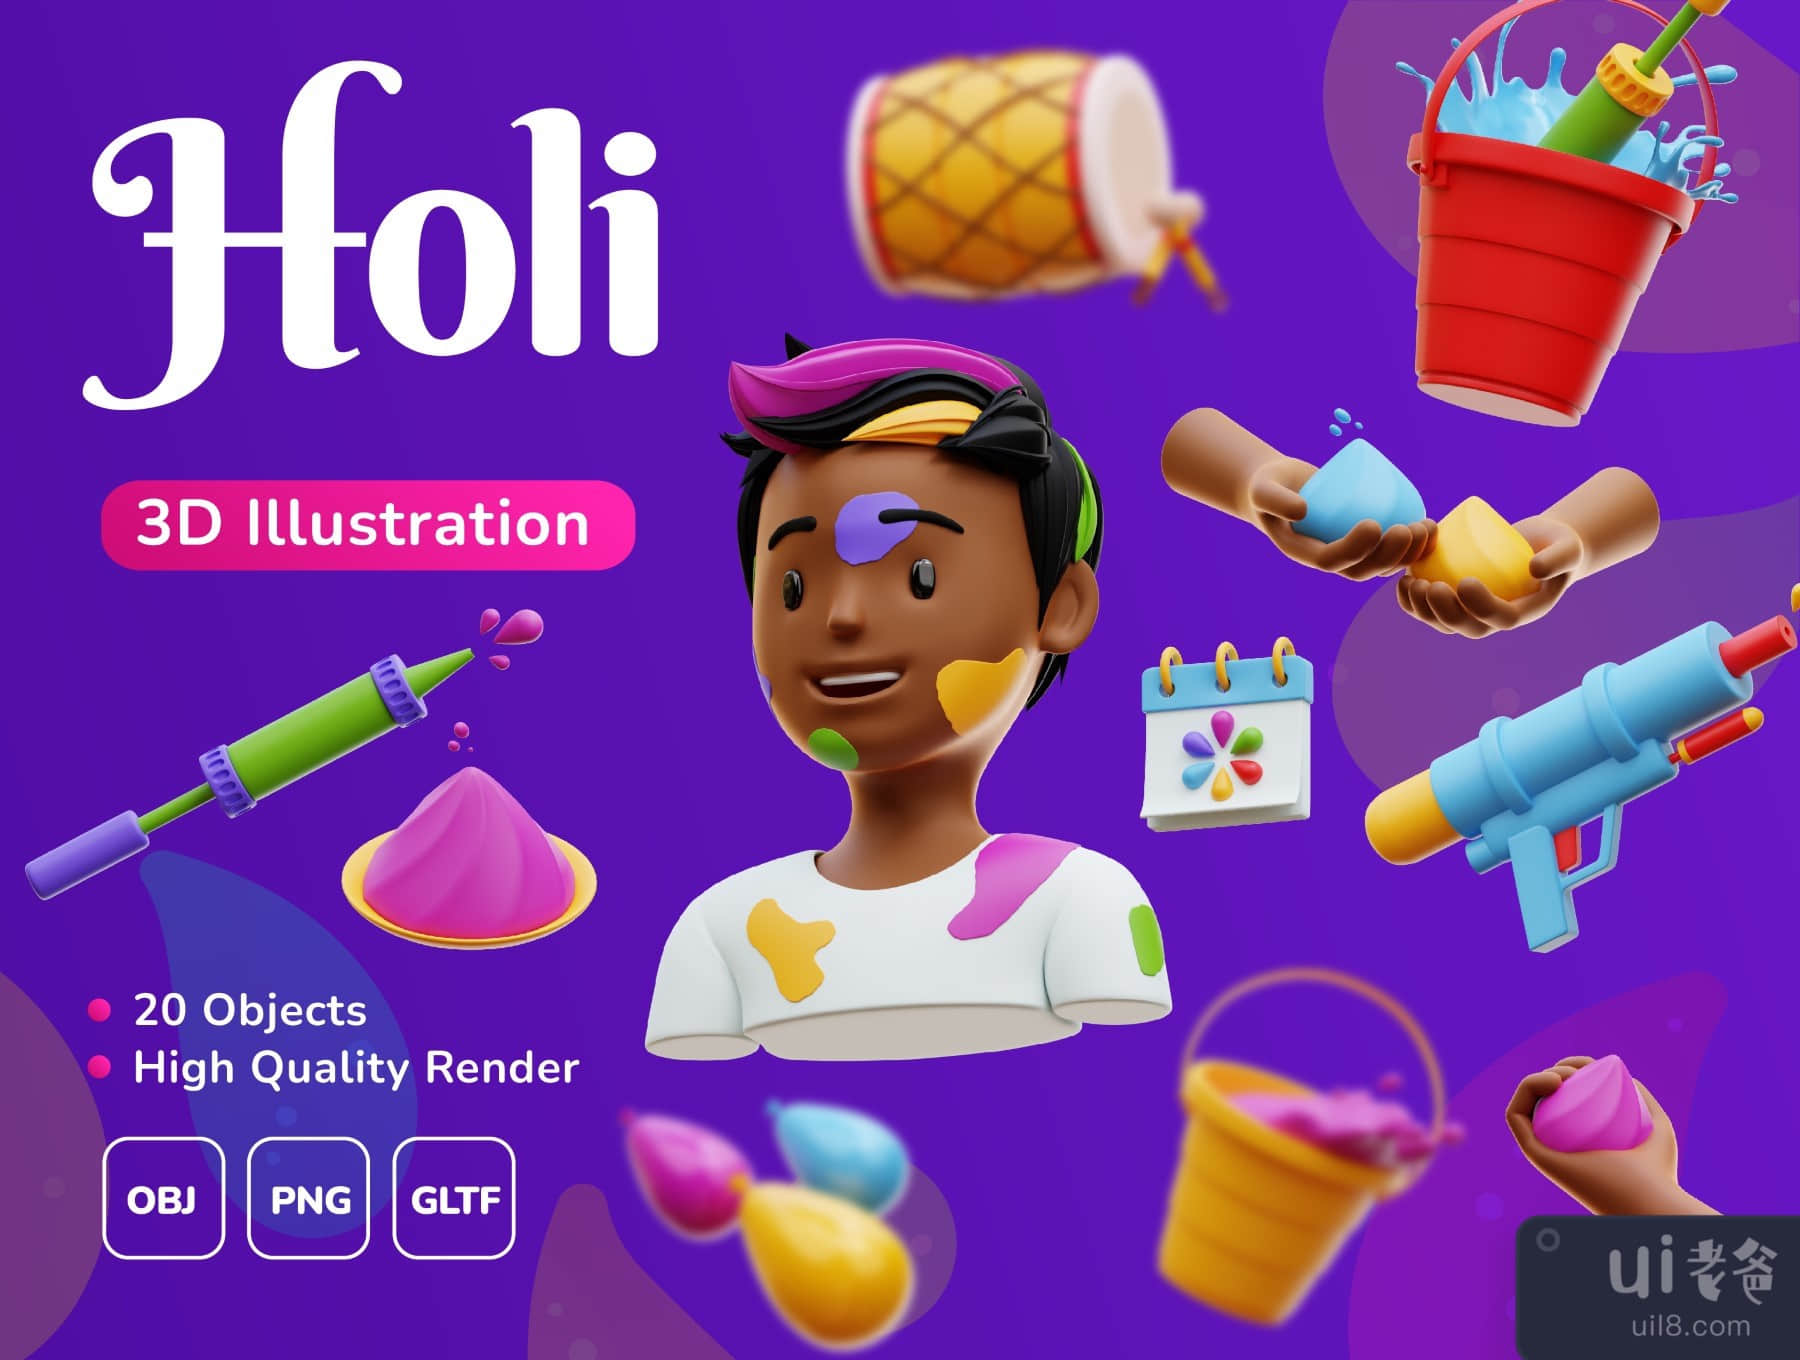 Holi Festival - 3D插图包 (Holi Festival - 3D illustration Pack)插图